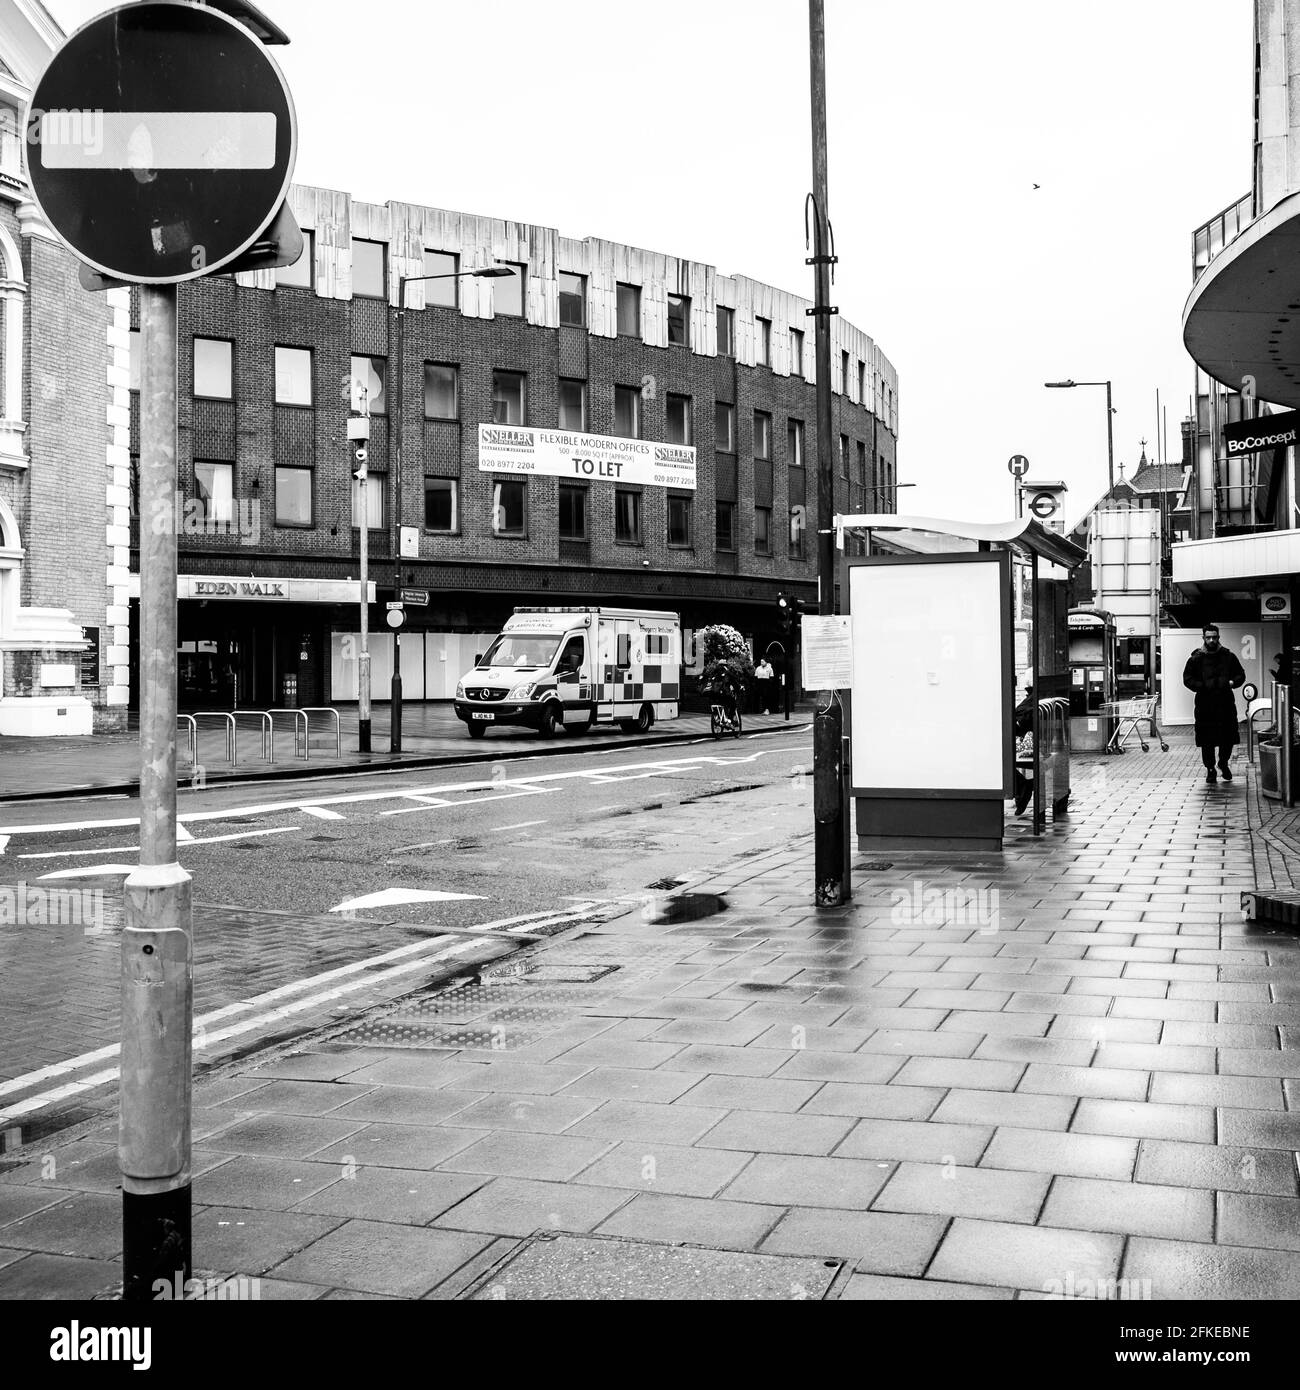 Kingston Upon Thames, Londres Reino Unido, Ambulance estacionado en una calle alta con una señal de carretera de no entrada Foto de stock